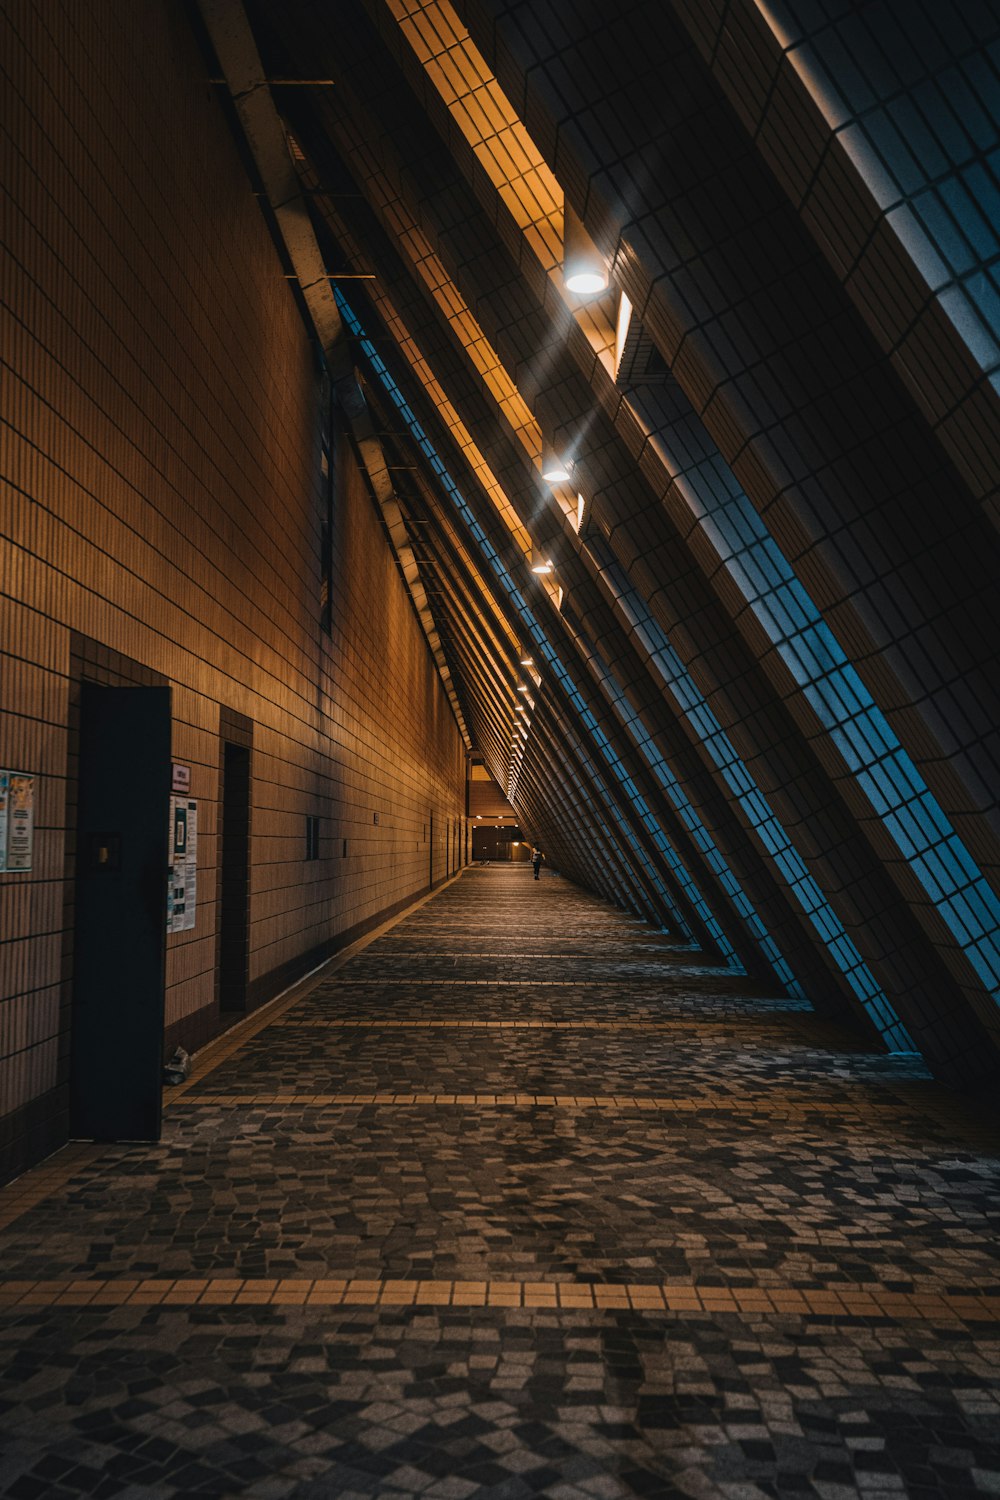 a long hallway with a tiled floor and a skylight